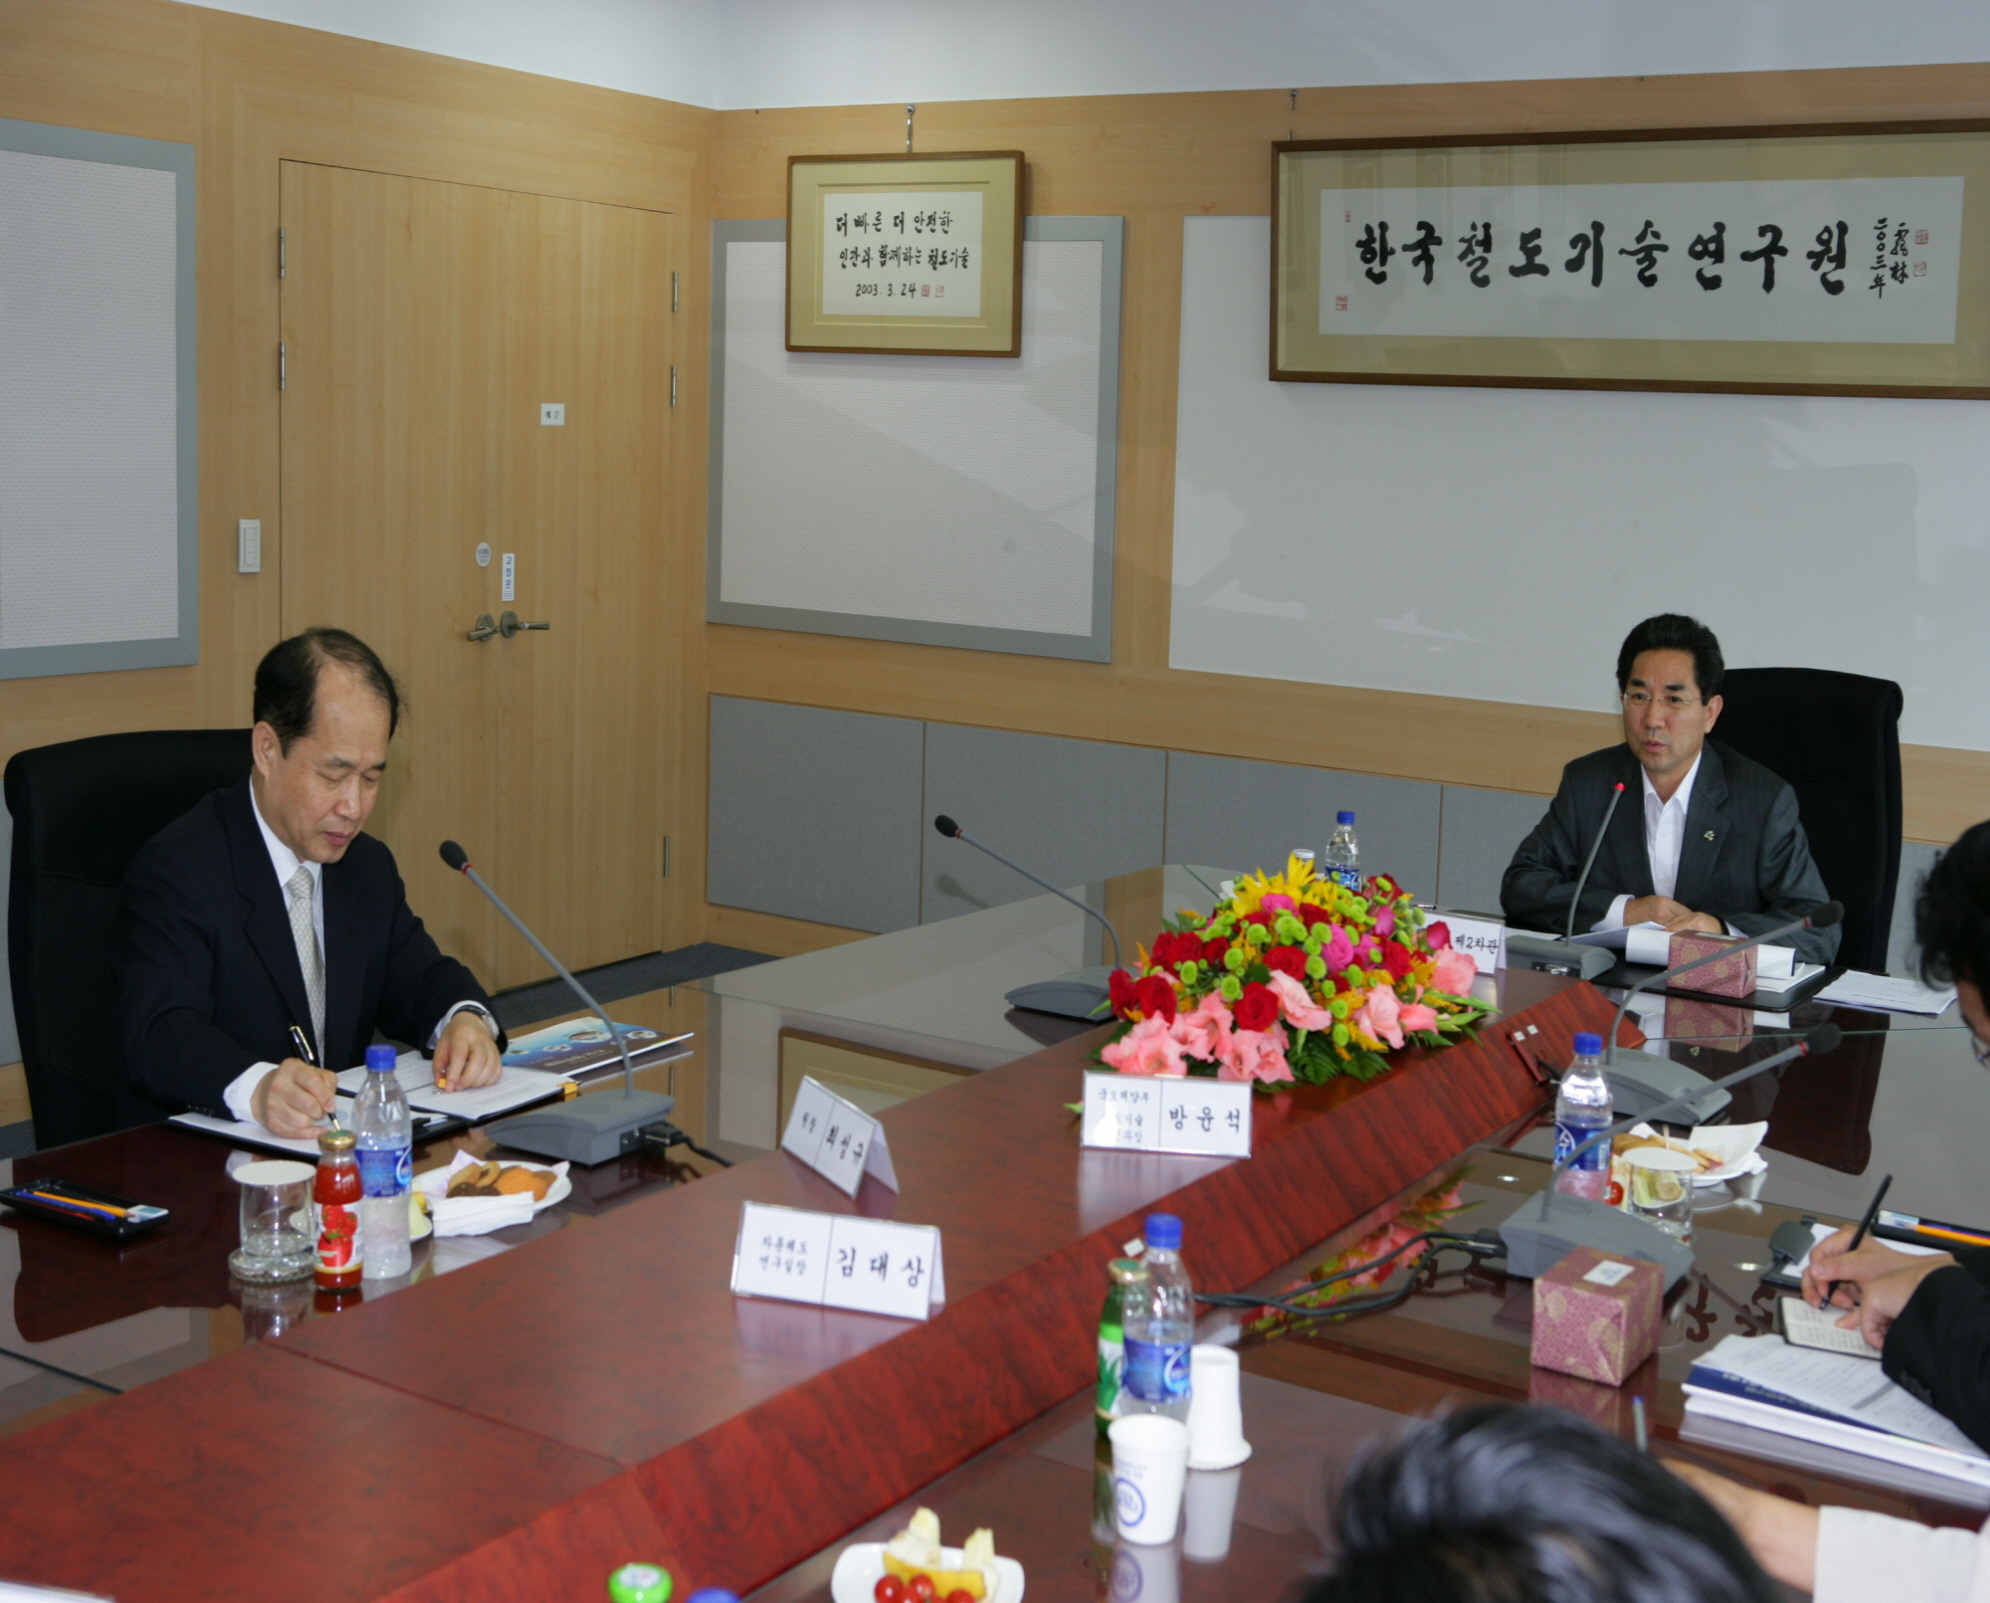 한국철도기술연구원 방문 (2009/06/17)